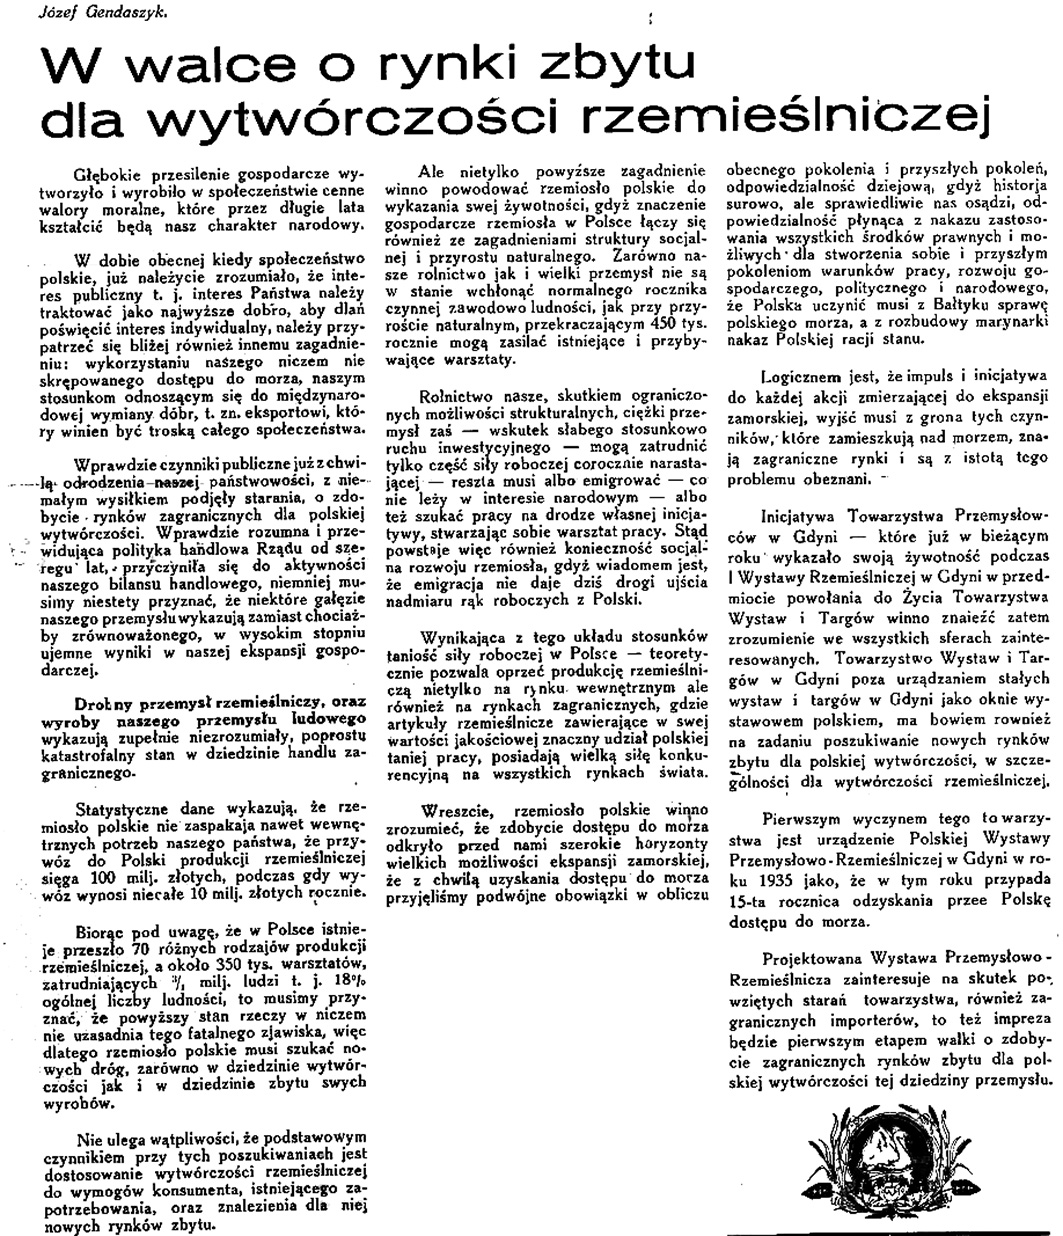 W walce o rynki zbytu dla wytwórczości rzemieślniczej / Józef Gendaszyk // Latarnia Morska. - 1934, nr 46, s. 2